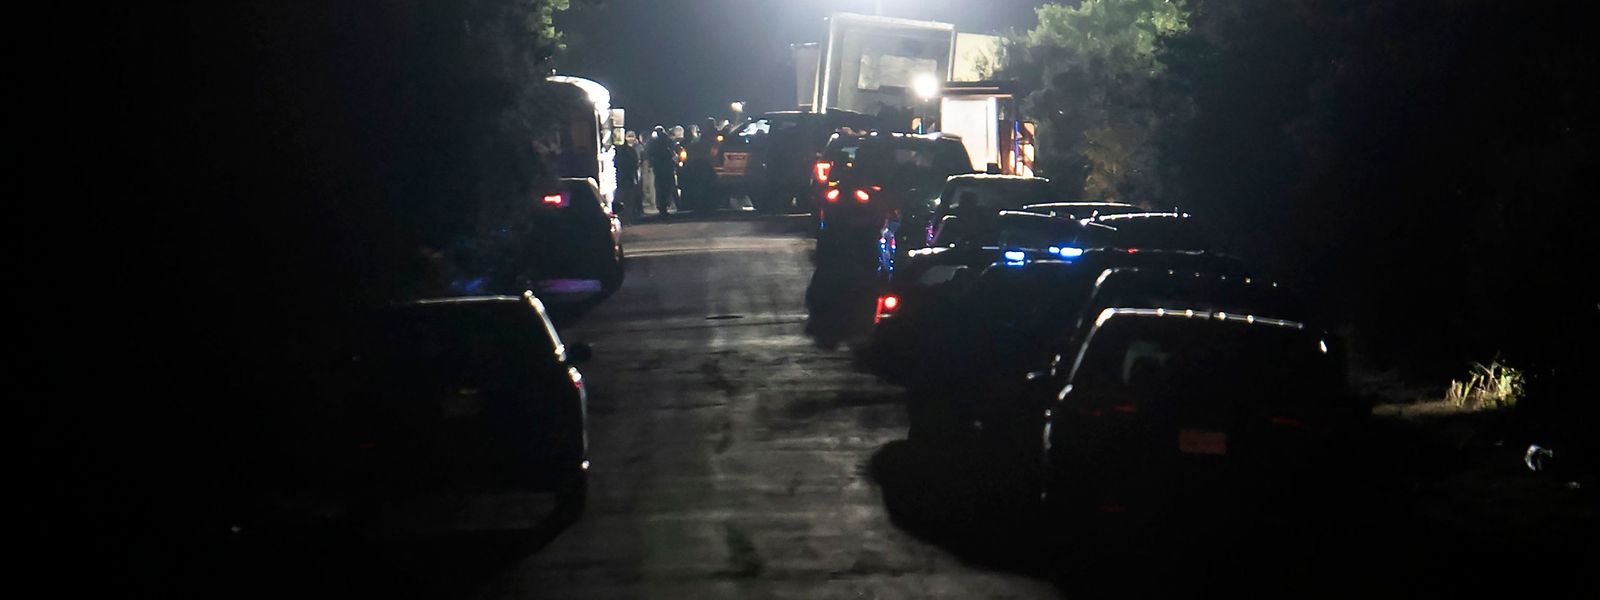 Equipas de polícia e bombeiros foram mobilizadas para o local onde foi encontrado o camião, em San Antonio, Texas.